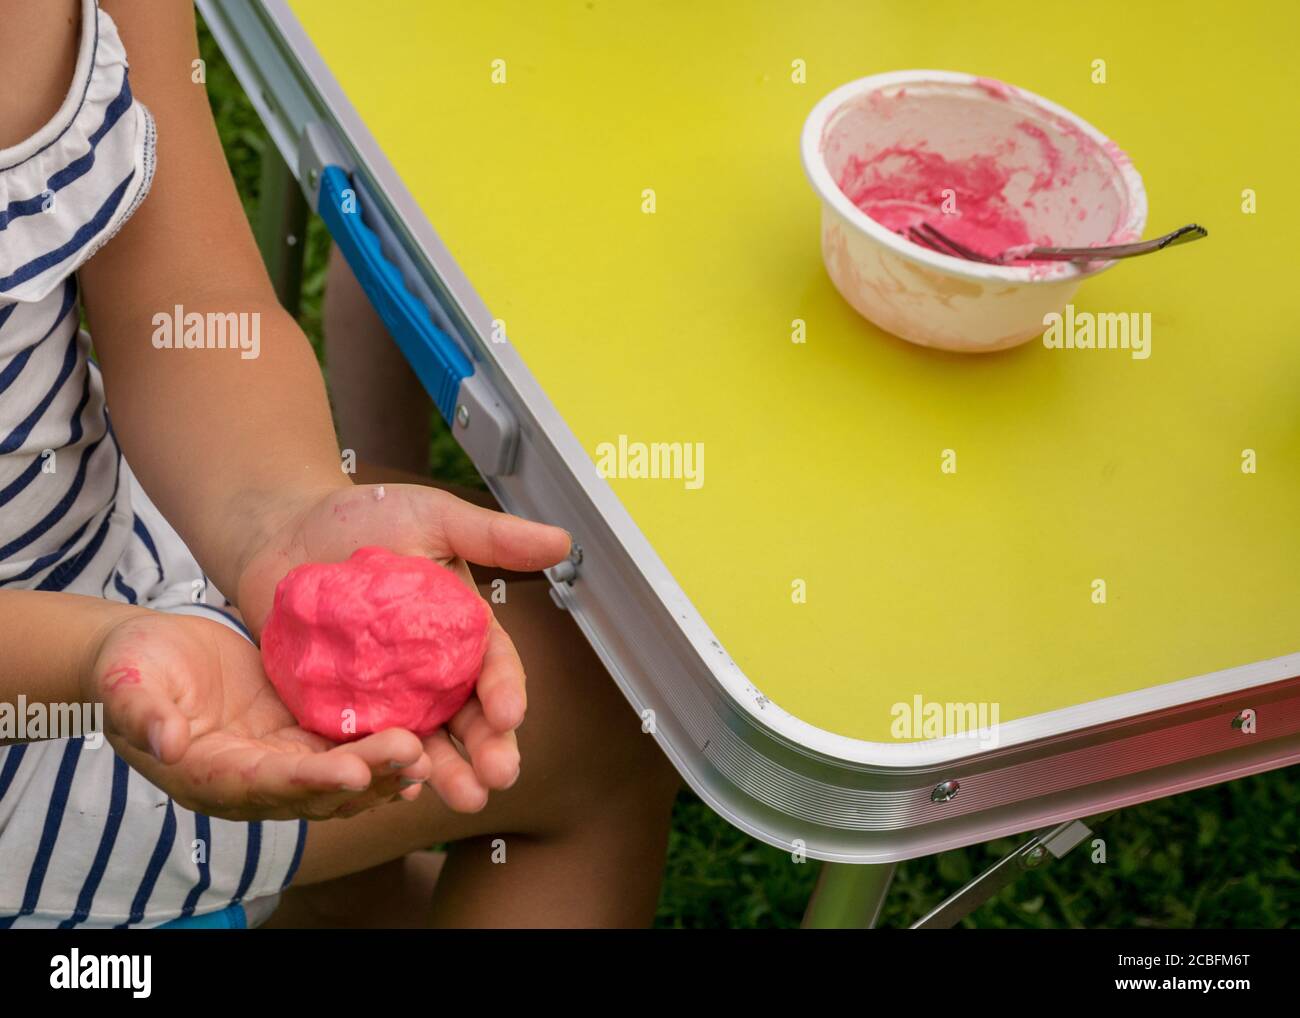 Sucediendo He aprendido Cha las manos de los niños con slime autohecho, hacer slime en una fiesta de  cumpleaños, el primer plano de un niño pequeño es la mano jugando un slime,  hecho a mano Fotografía